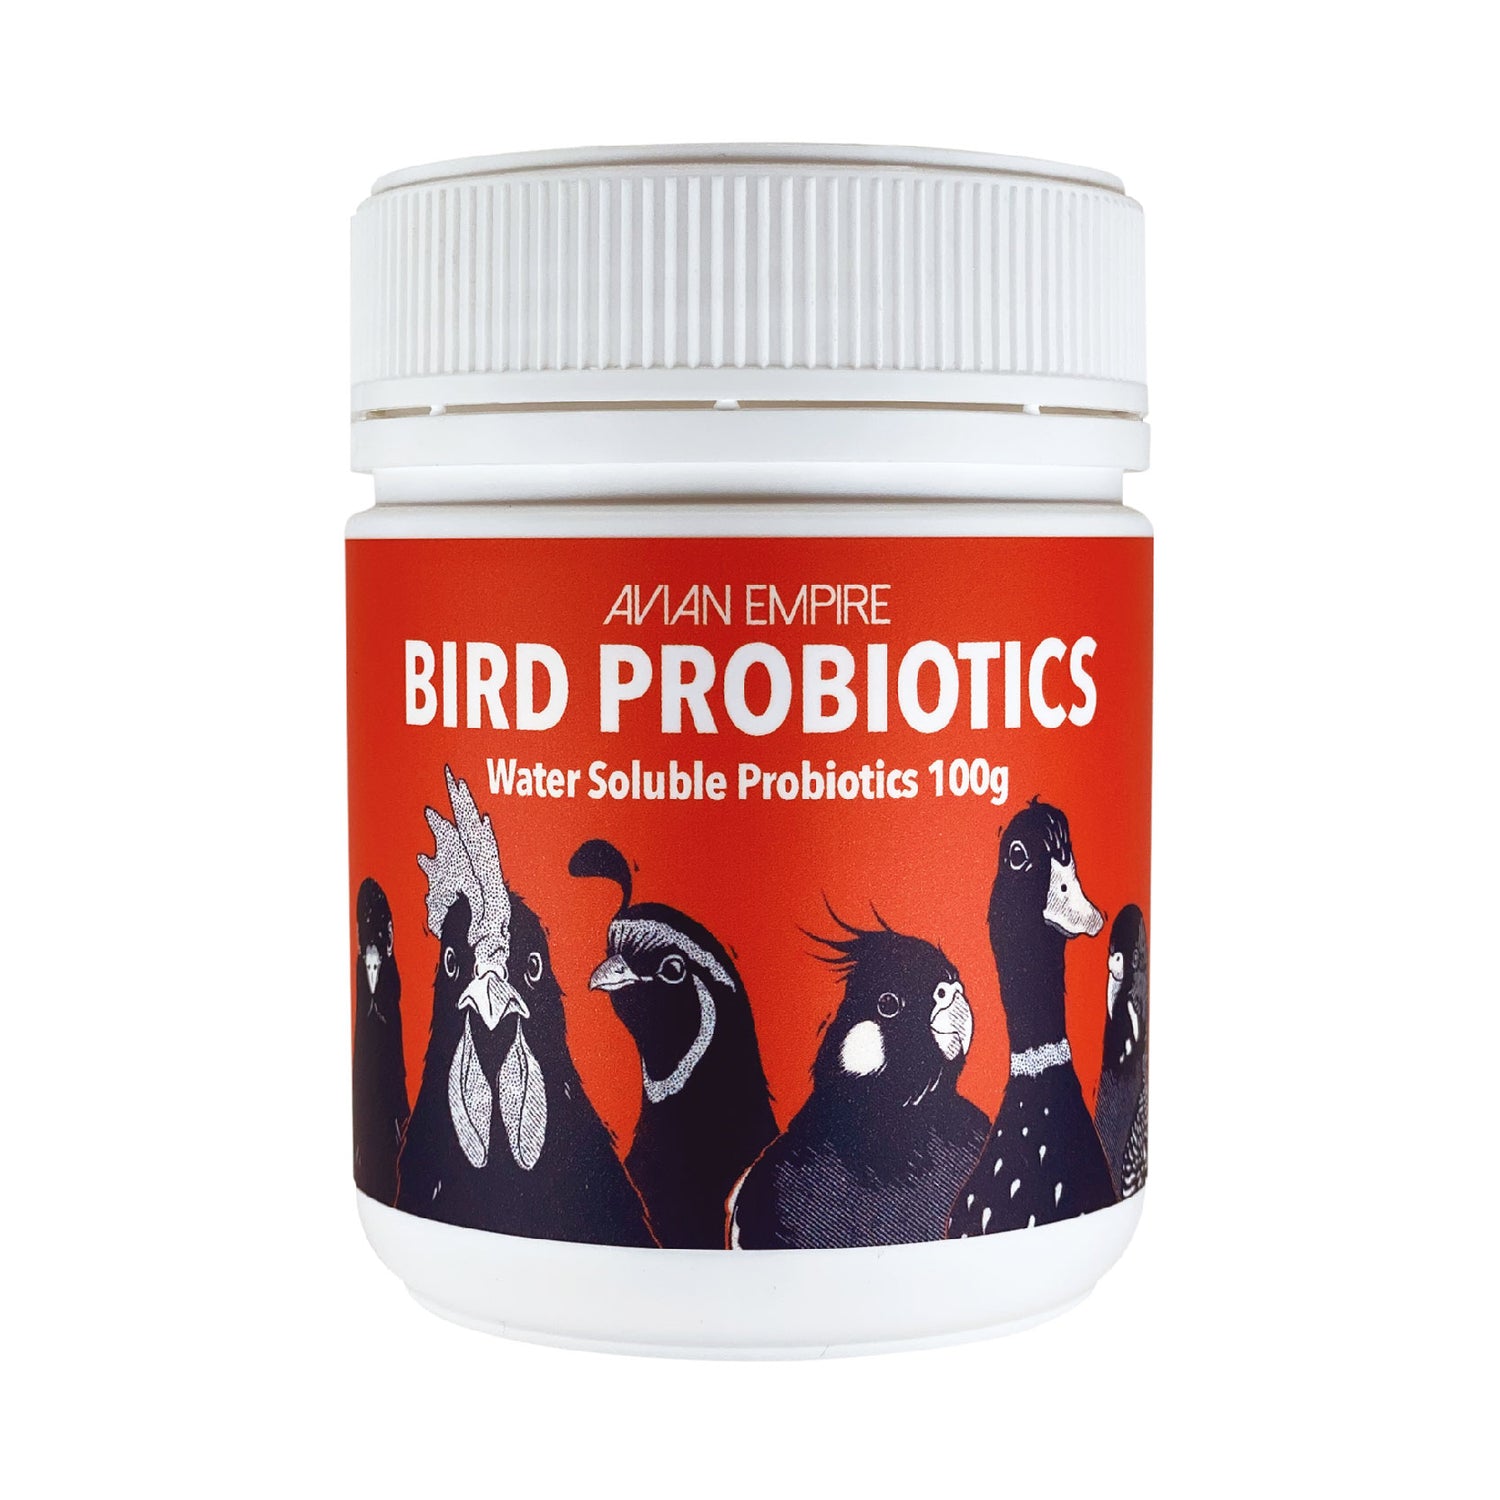 Bird probiotics